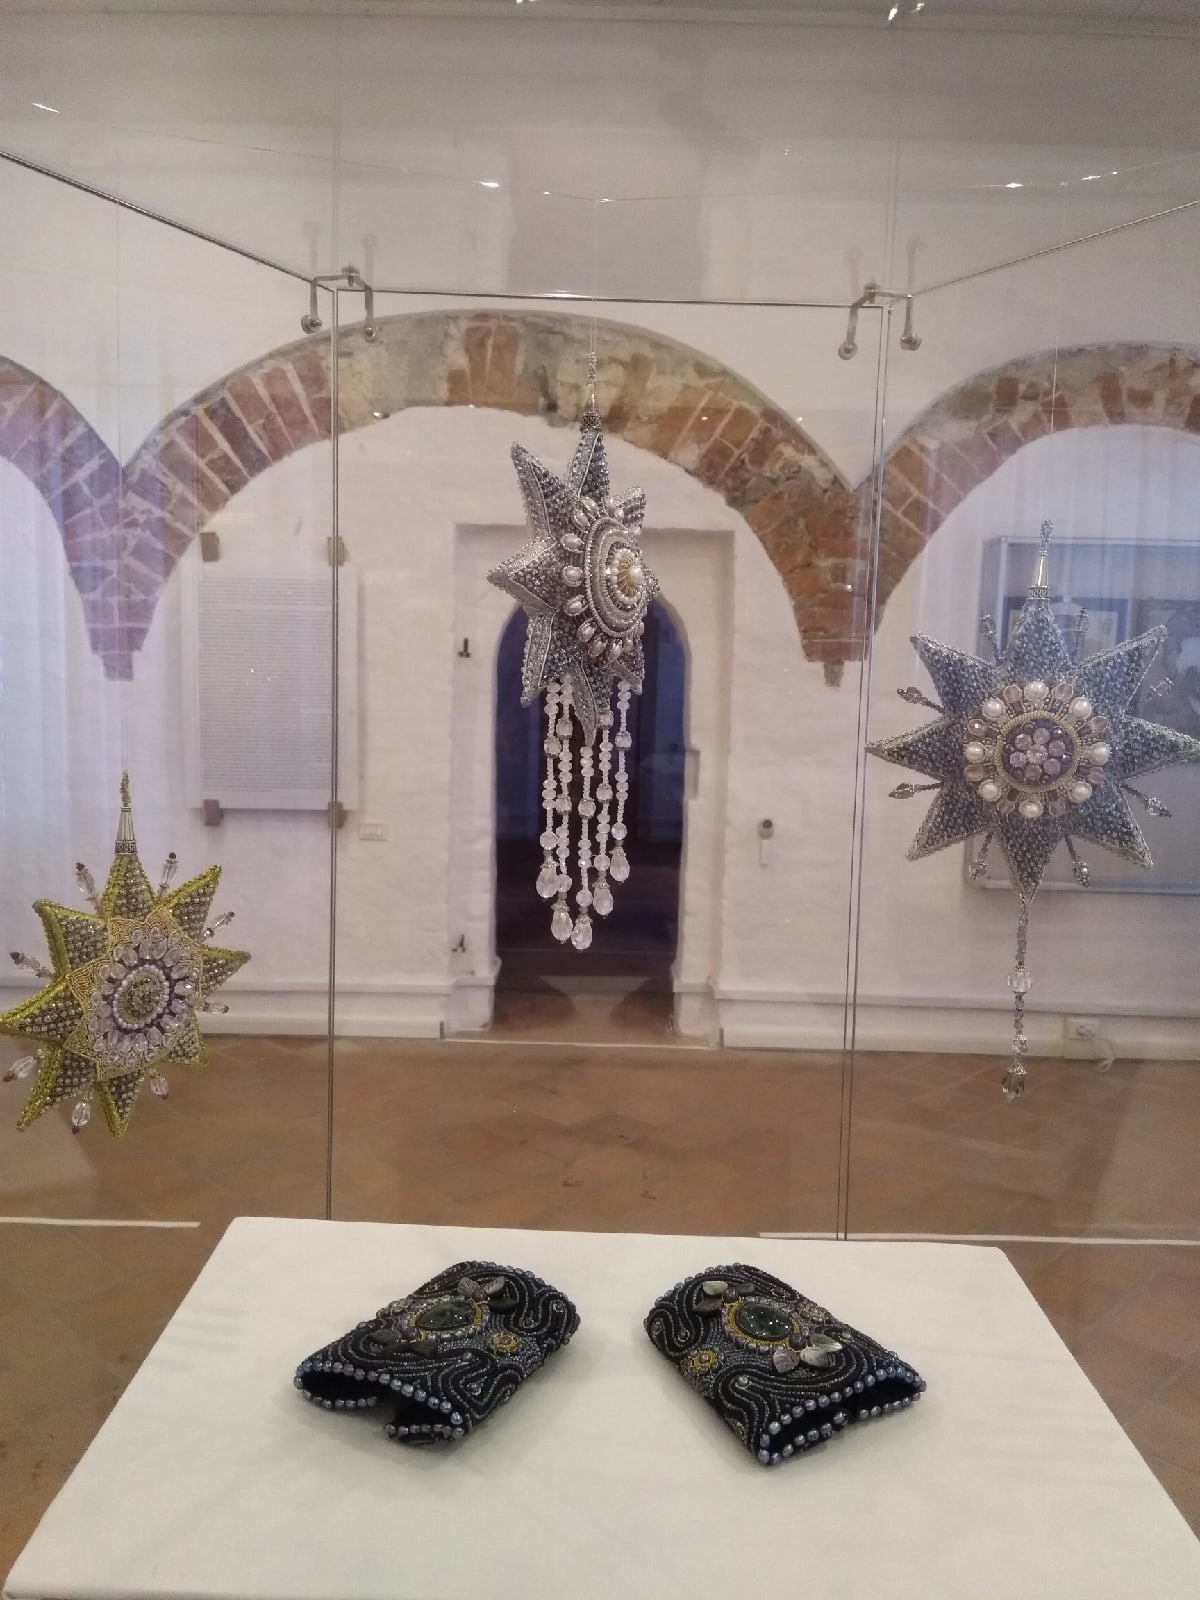 Вифлеемские звезды, а также изящные изделия с жемчужной вышивкой увидят посетители выставки в Кирилло-Белозерском музее